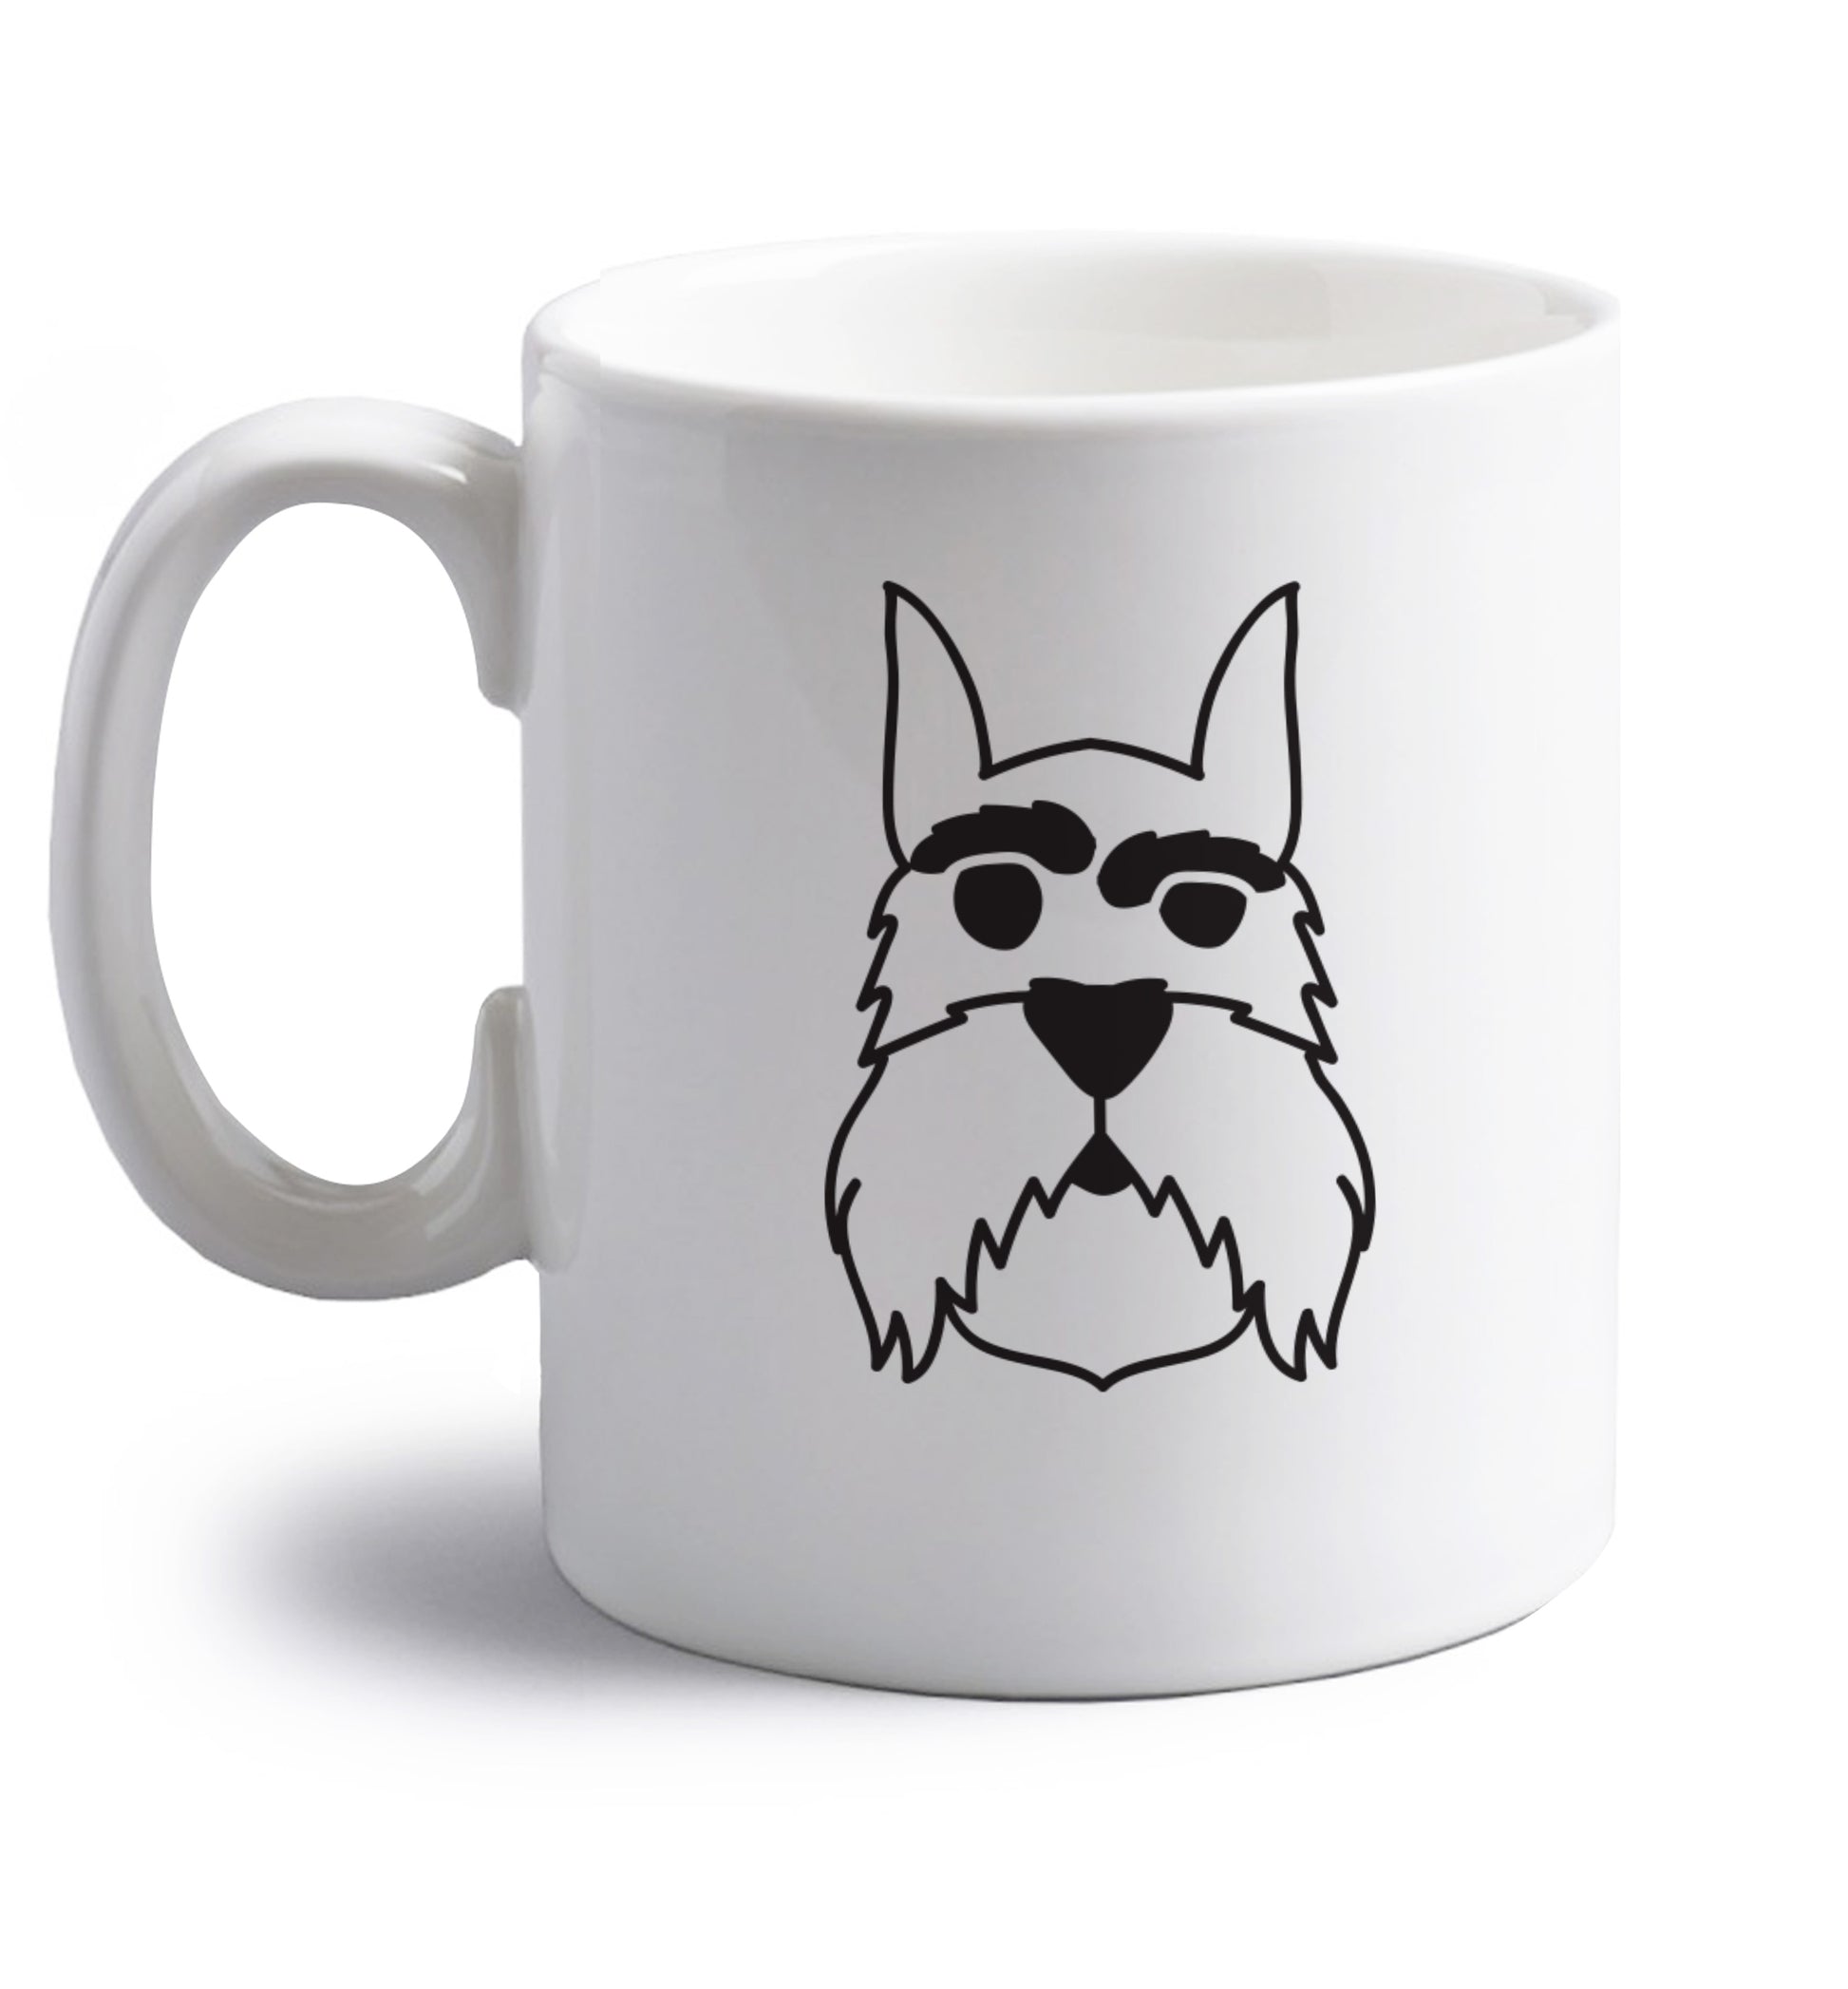 Schnauzer dog illustration right handed white ceramic mug 